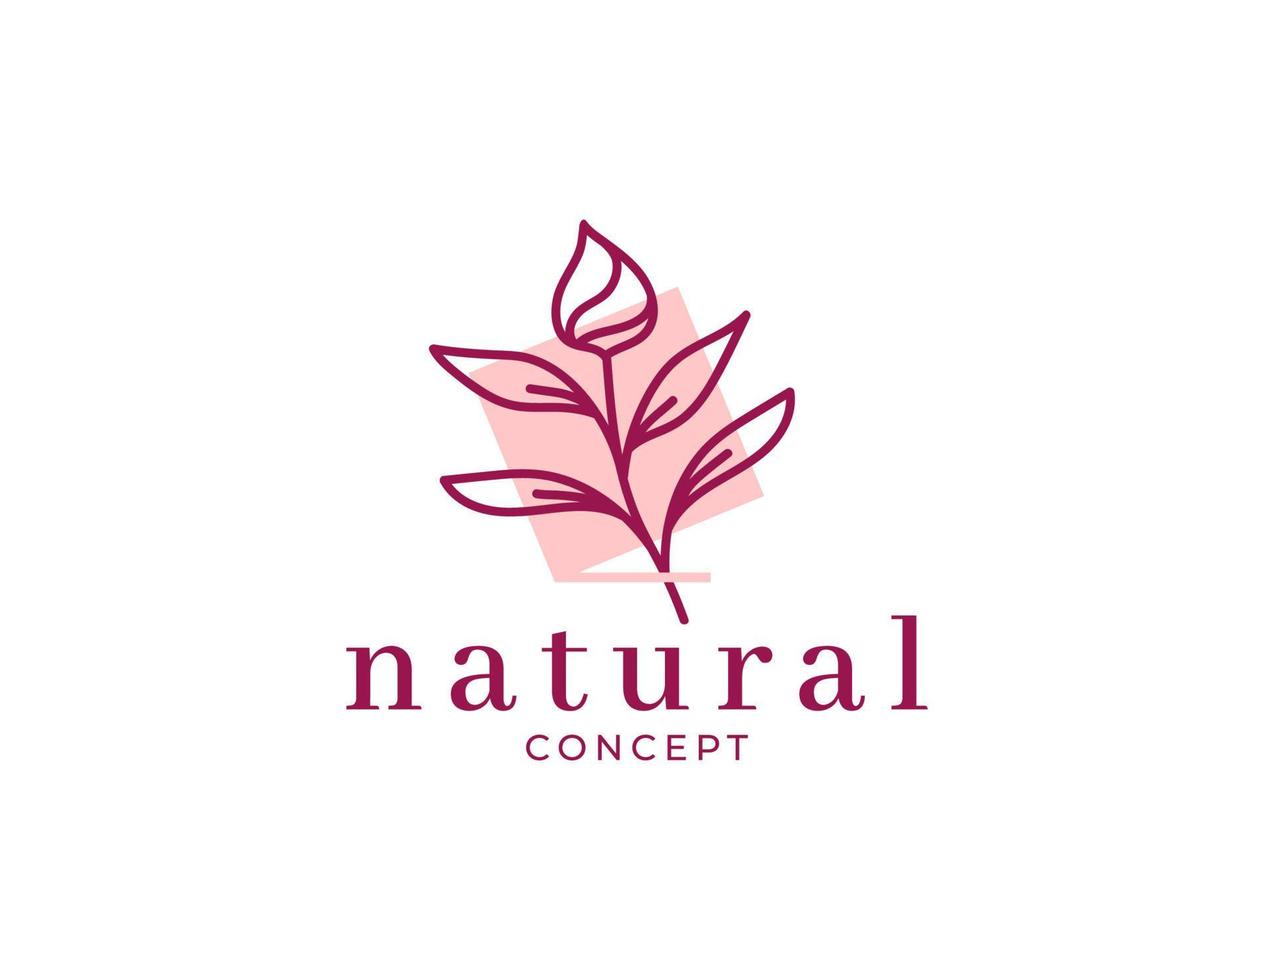 Natural vintage flower logo design template vector